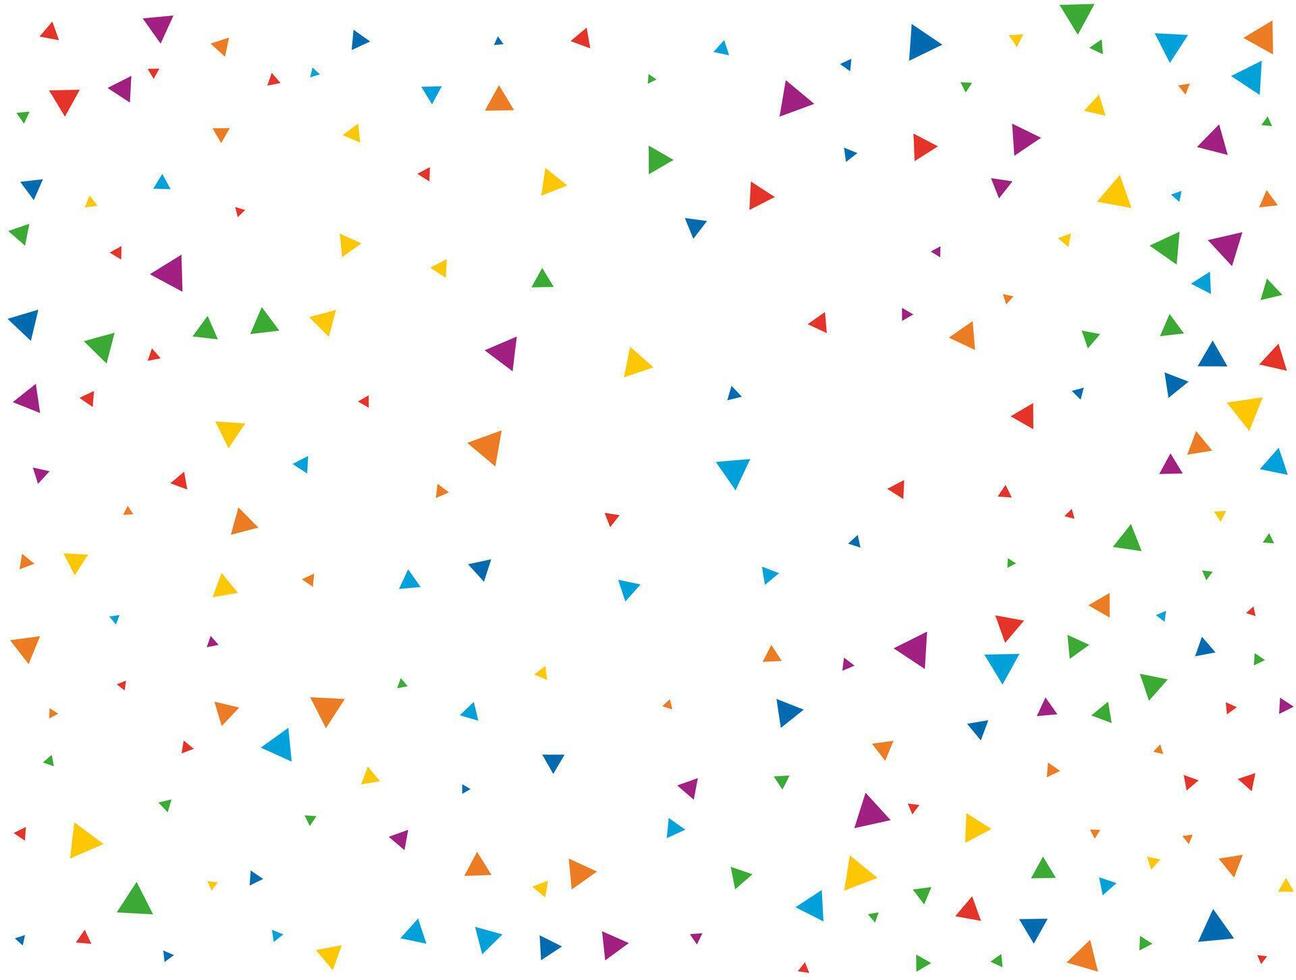 bröllop triangel- konfetti. ljus regnbåge glitter konfetti bakgrund. färgad festlig textur vektor